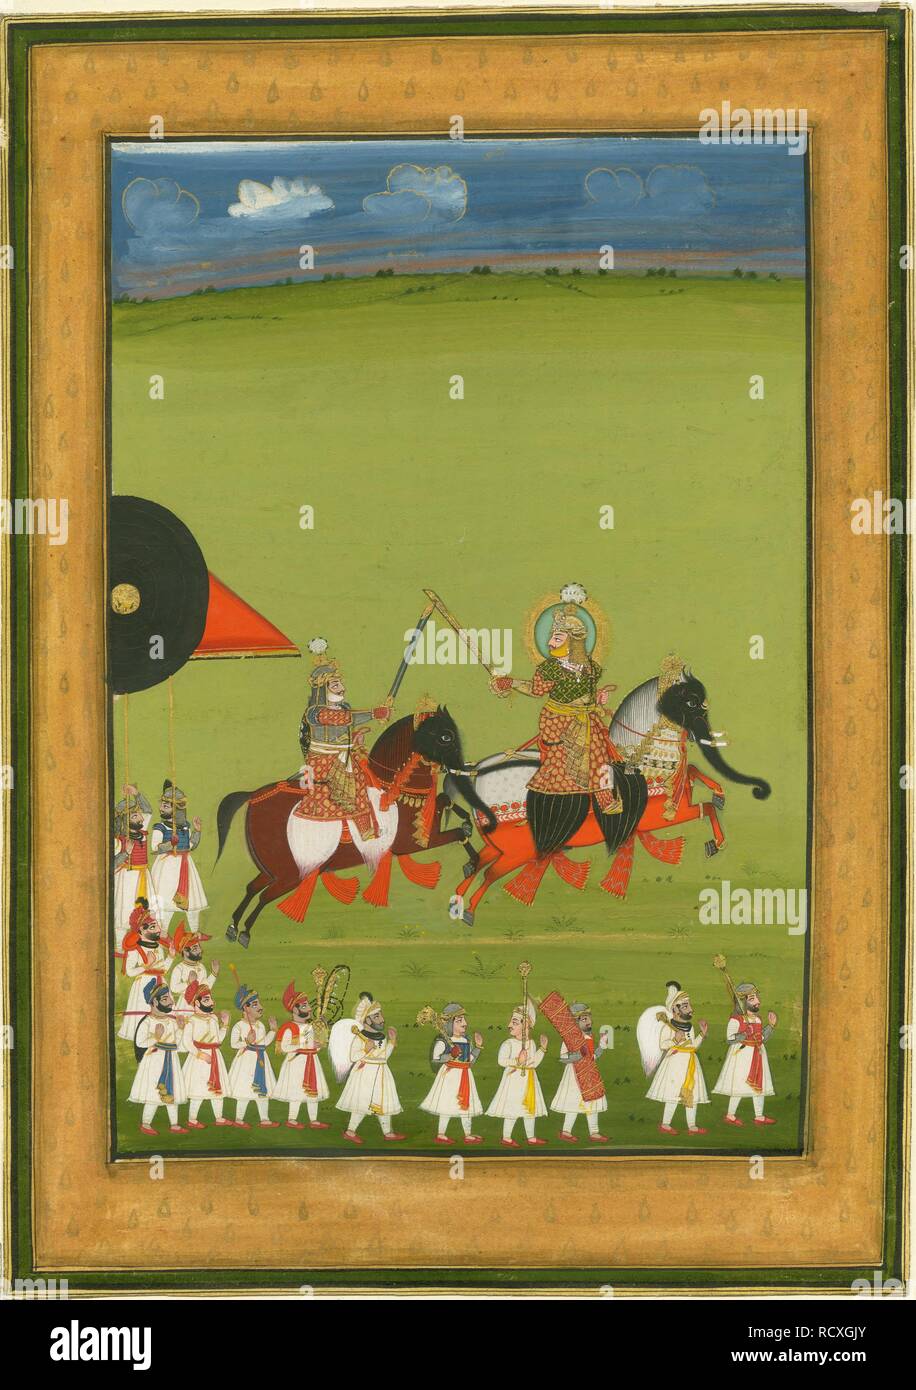 Rajá e hijo de caballos disfrazados de elefantes, y la suite de asistentes. Museo: Colección privada. Autor: arte indio. Foto de stock